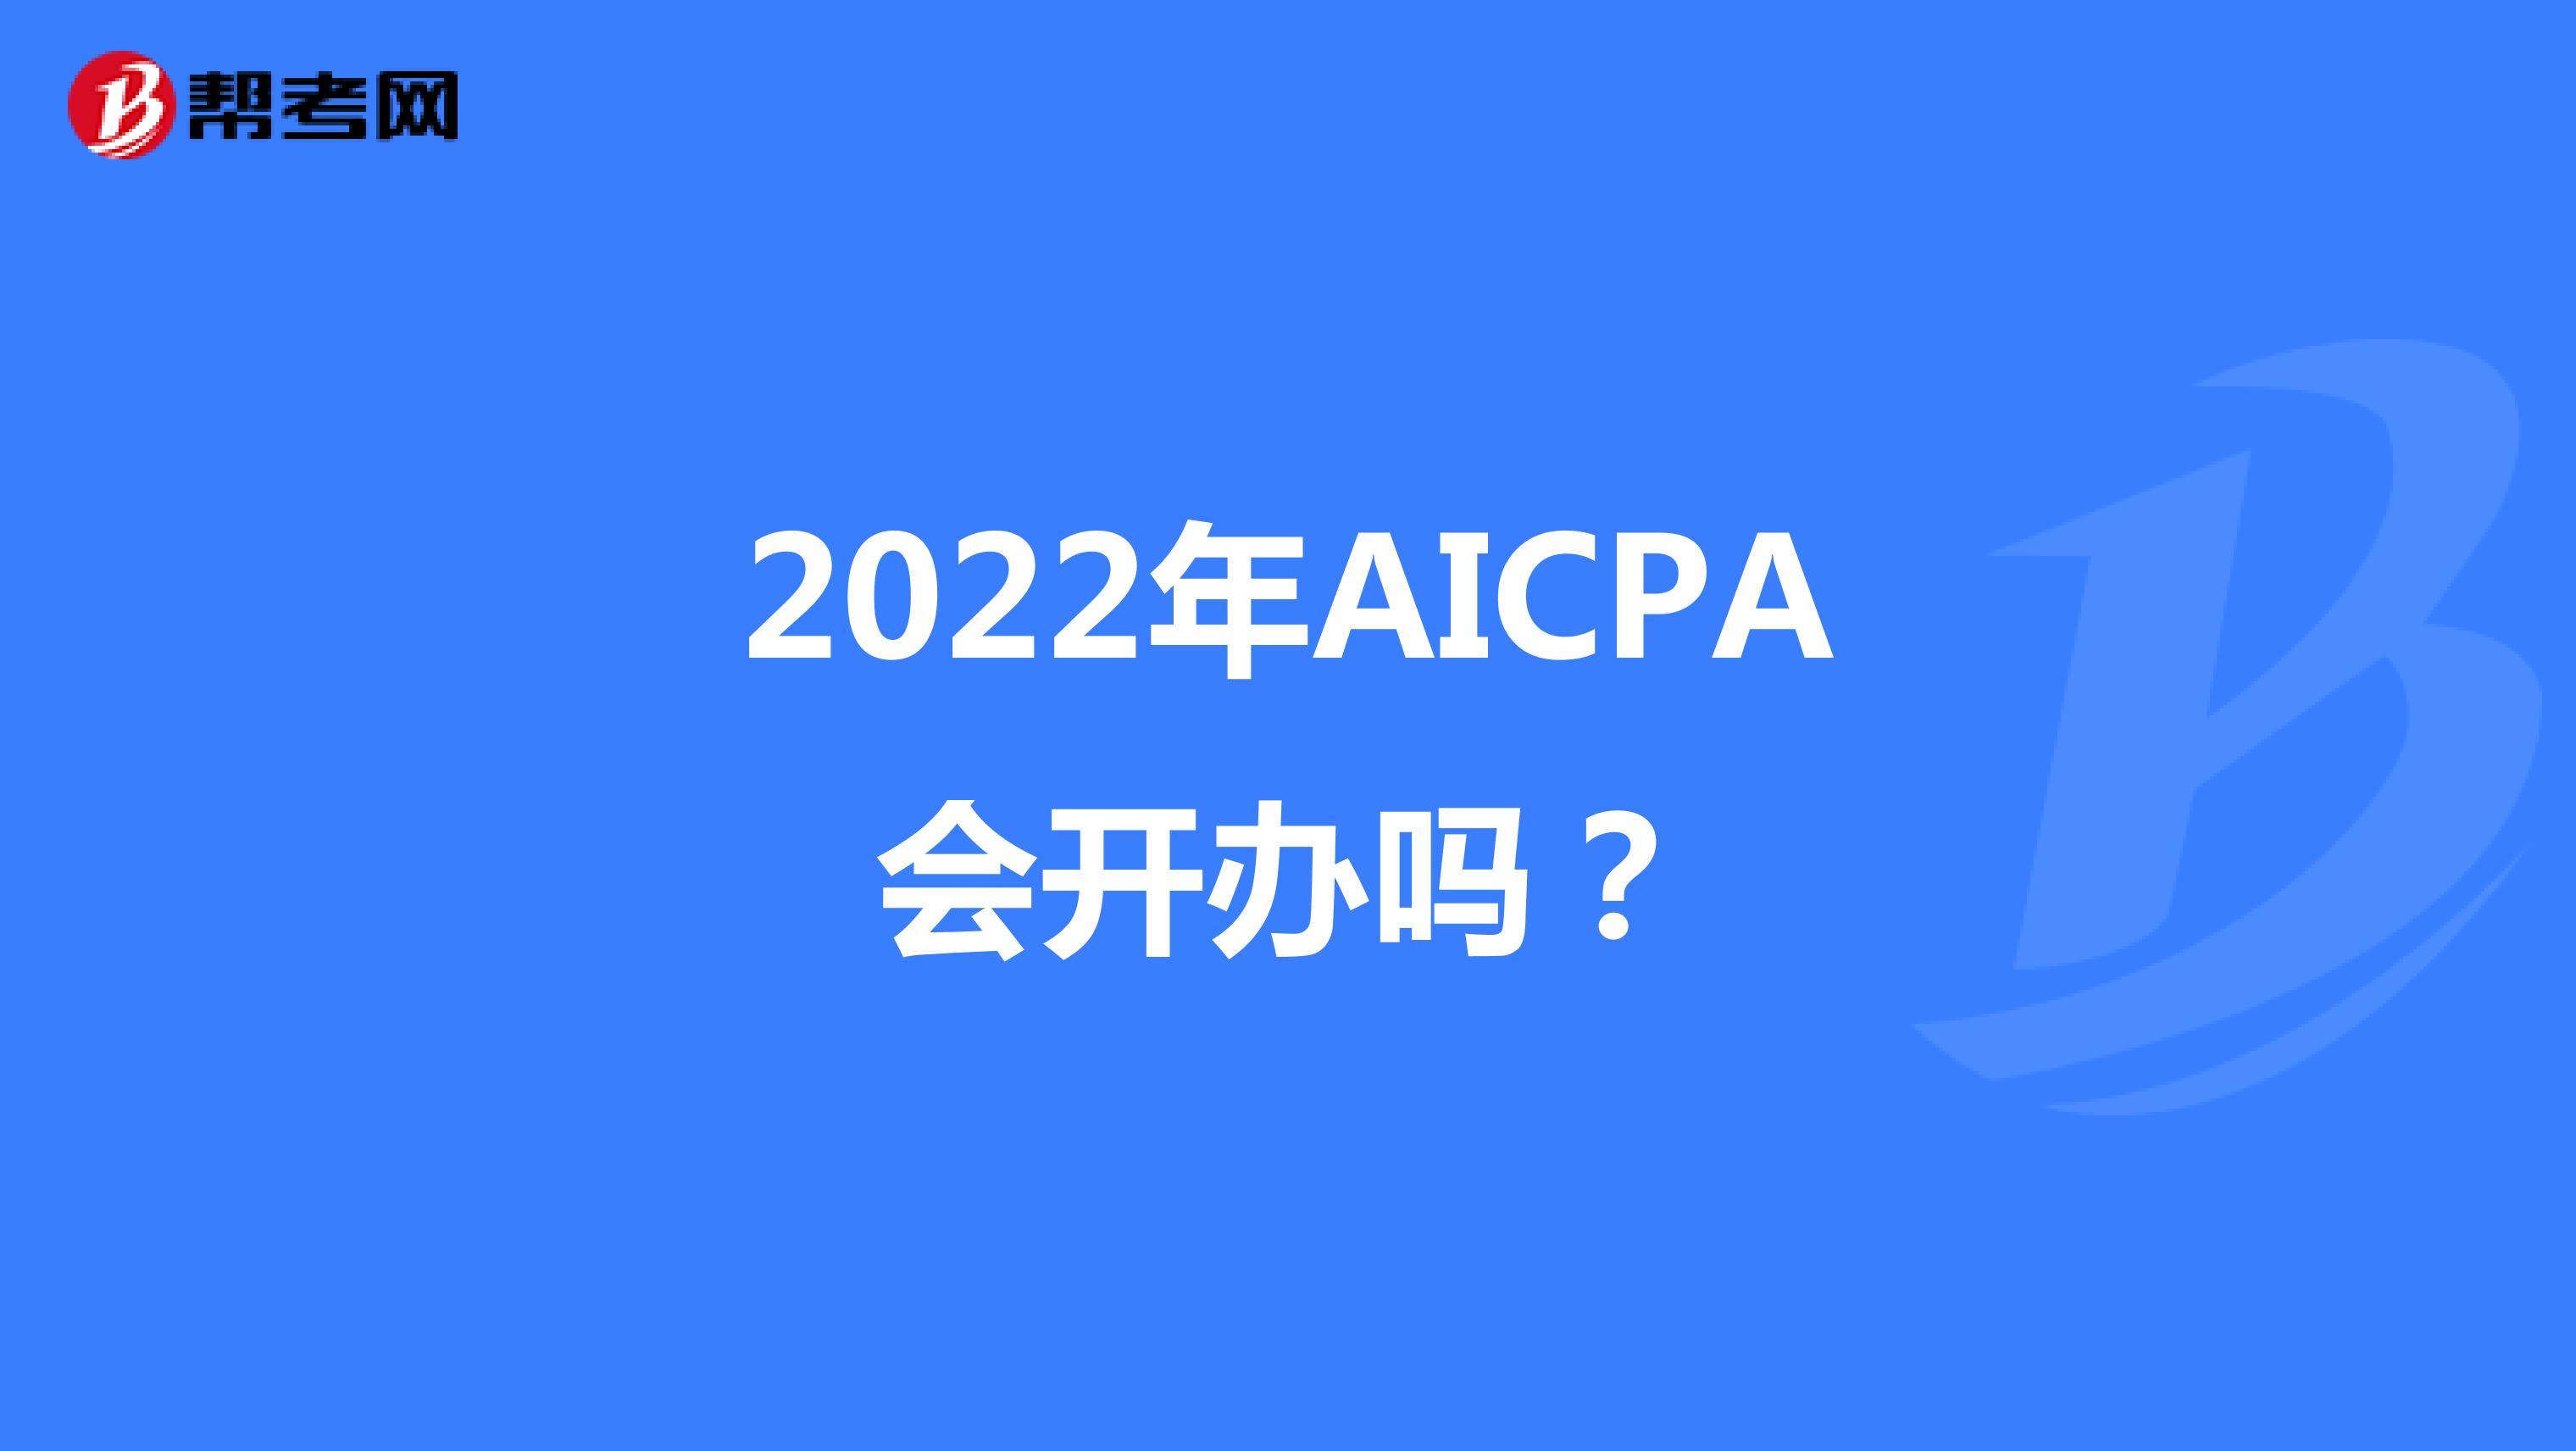 2022年AICPA会开办吗？